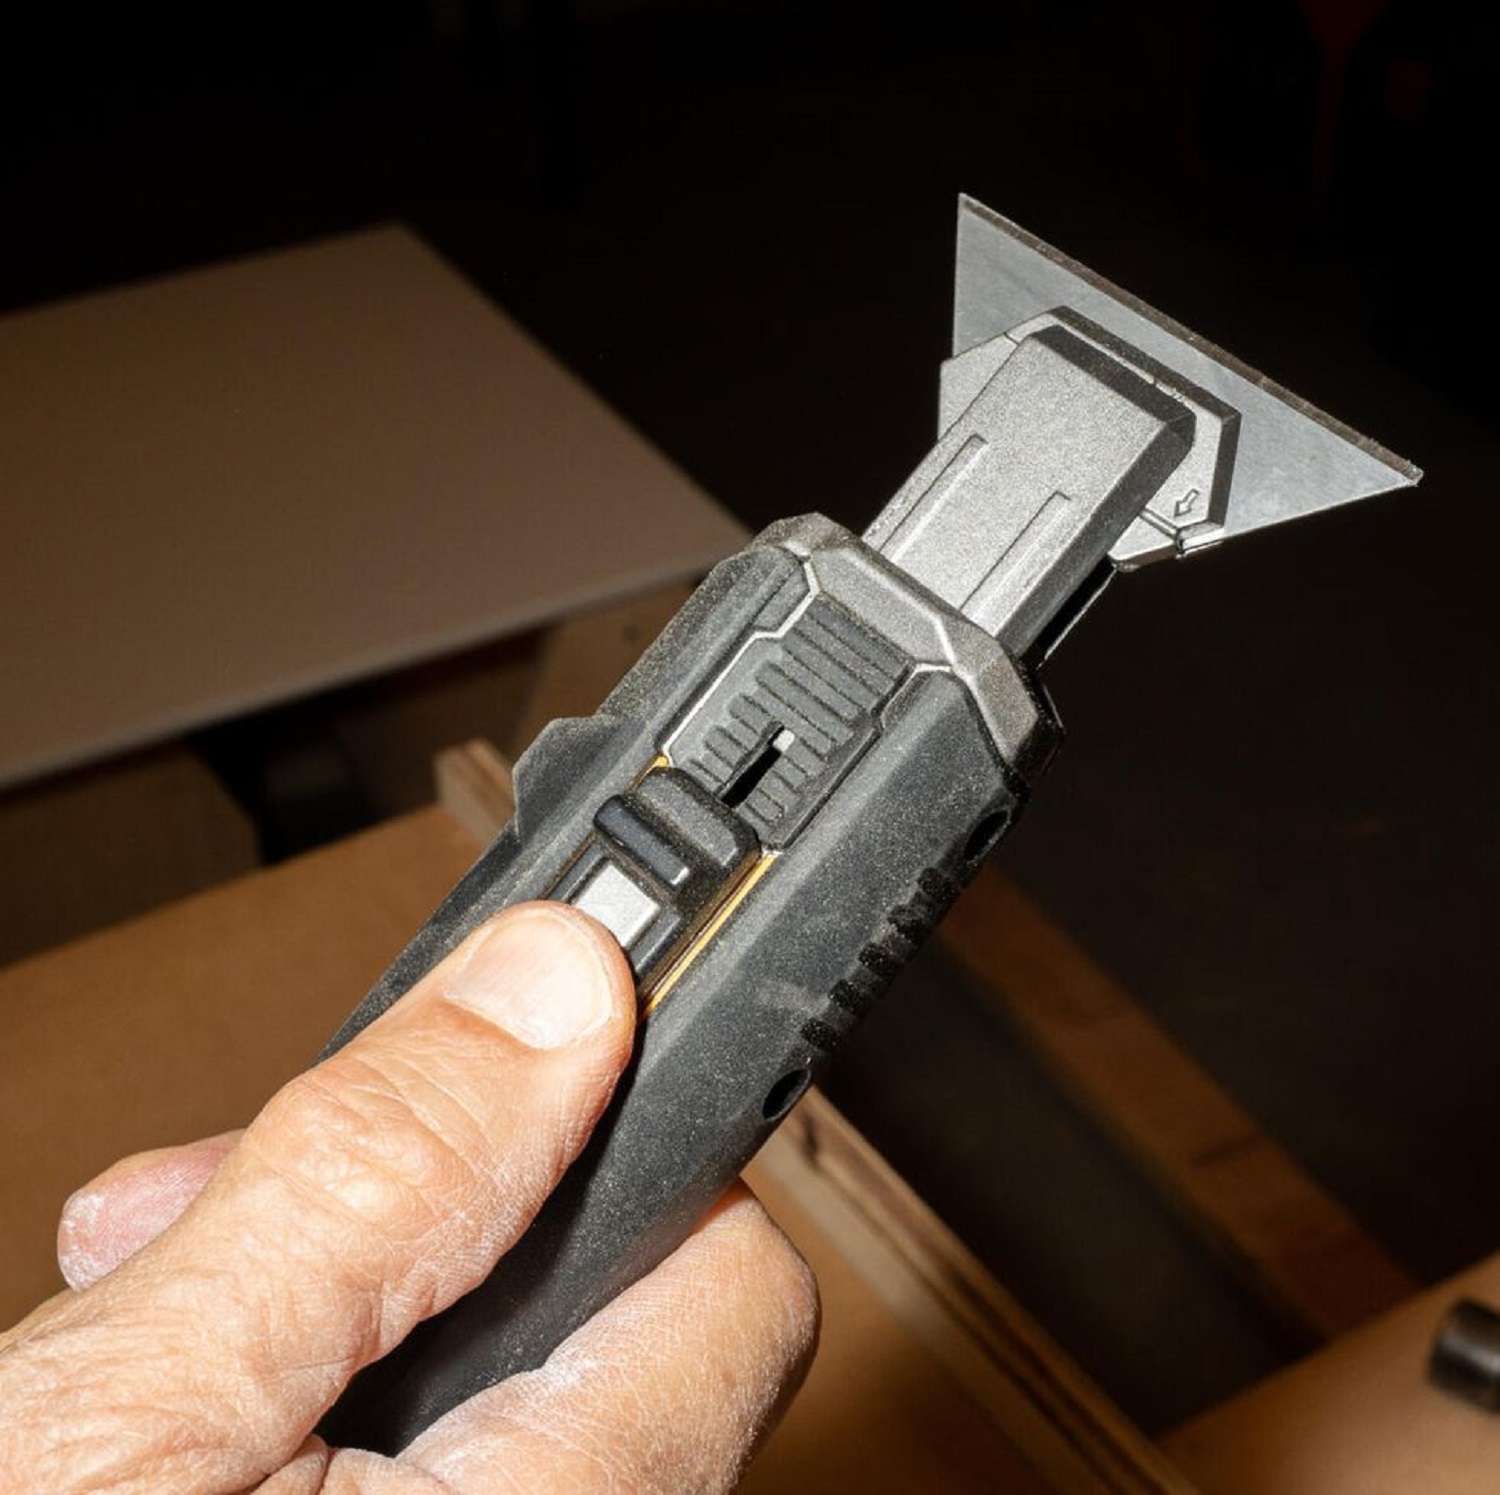 Nhấn chốt hoàn toàn về phía trước và thả ra để xoay lưỡi dao 90 độ. Ở vị trí lưỡi dao này, dụng cụ này hoạt động như một dụng cụ cạo dao cạo.